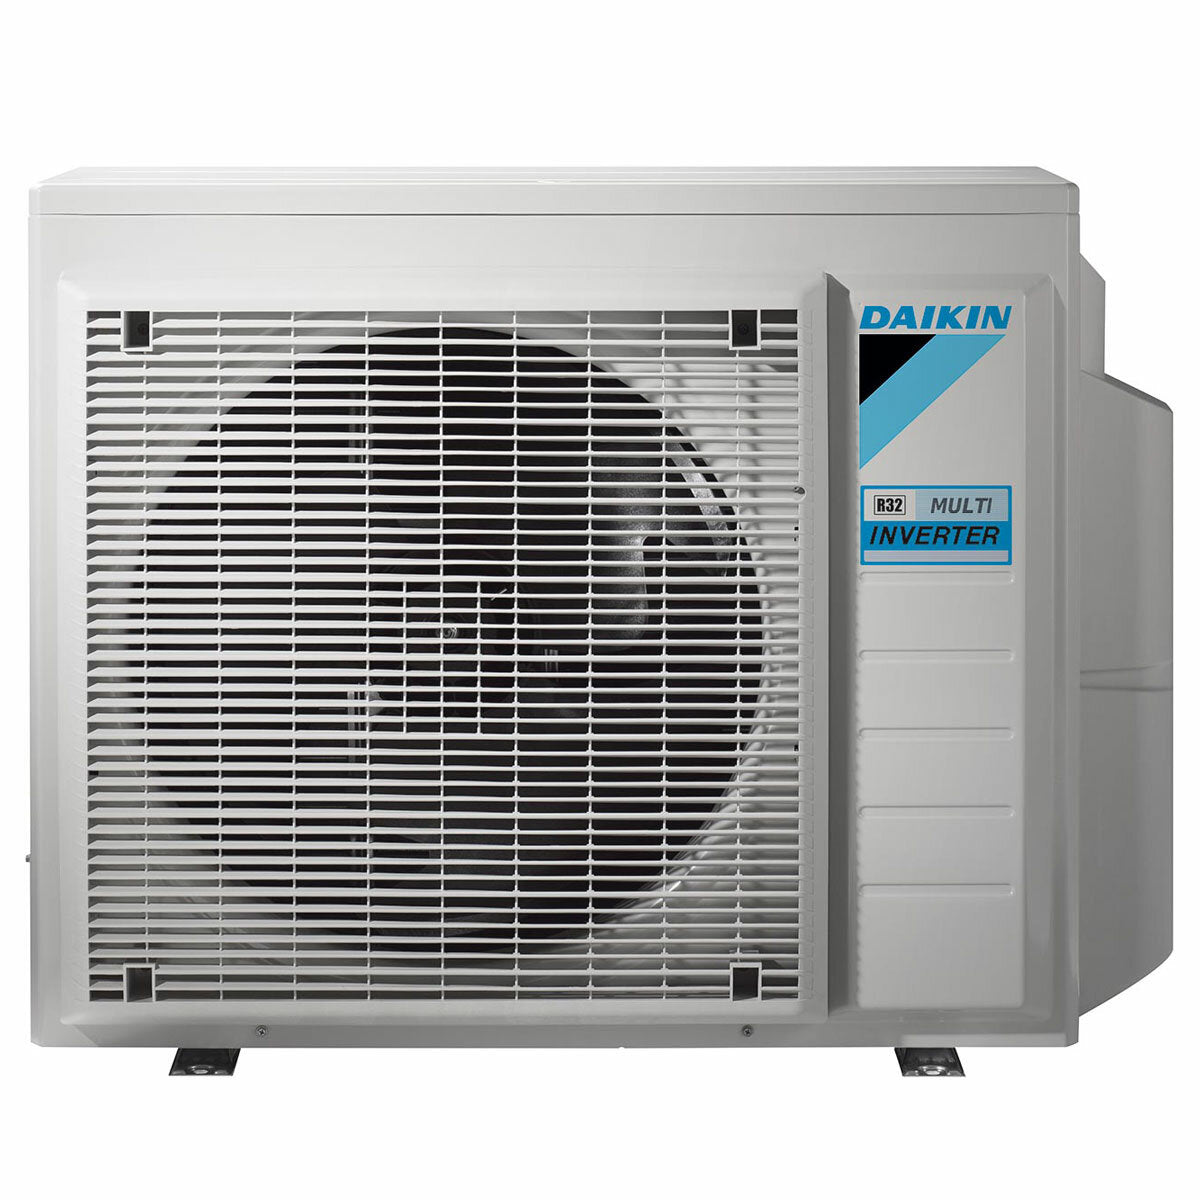 Daikin Emura air conditioner 3 split panels 7000 + 9000 + 9000 + 18000 BTU inverter A++ wifi outdoor unit 7.4 kW Black